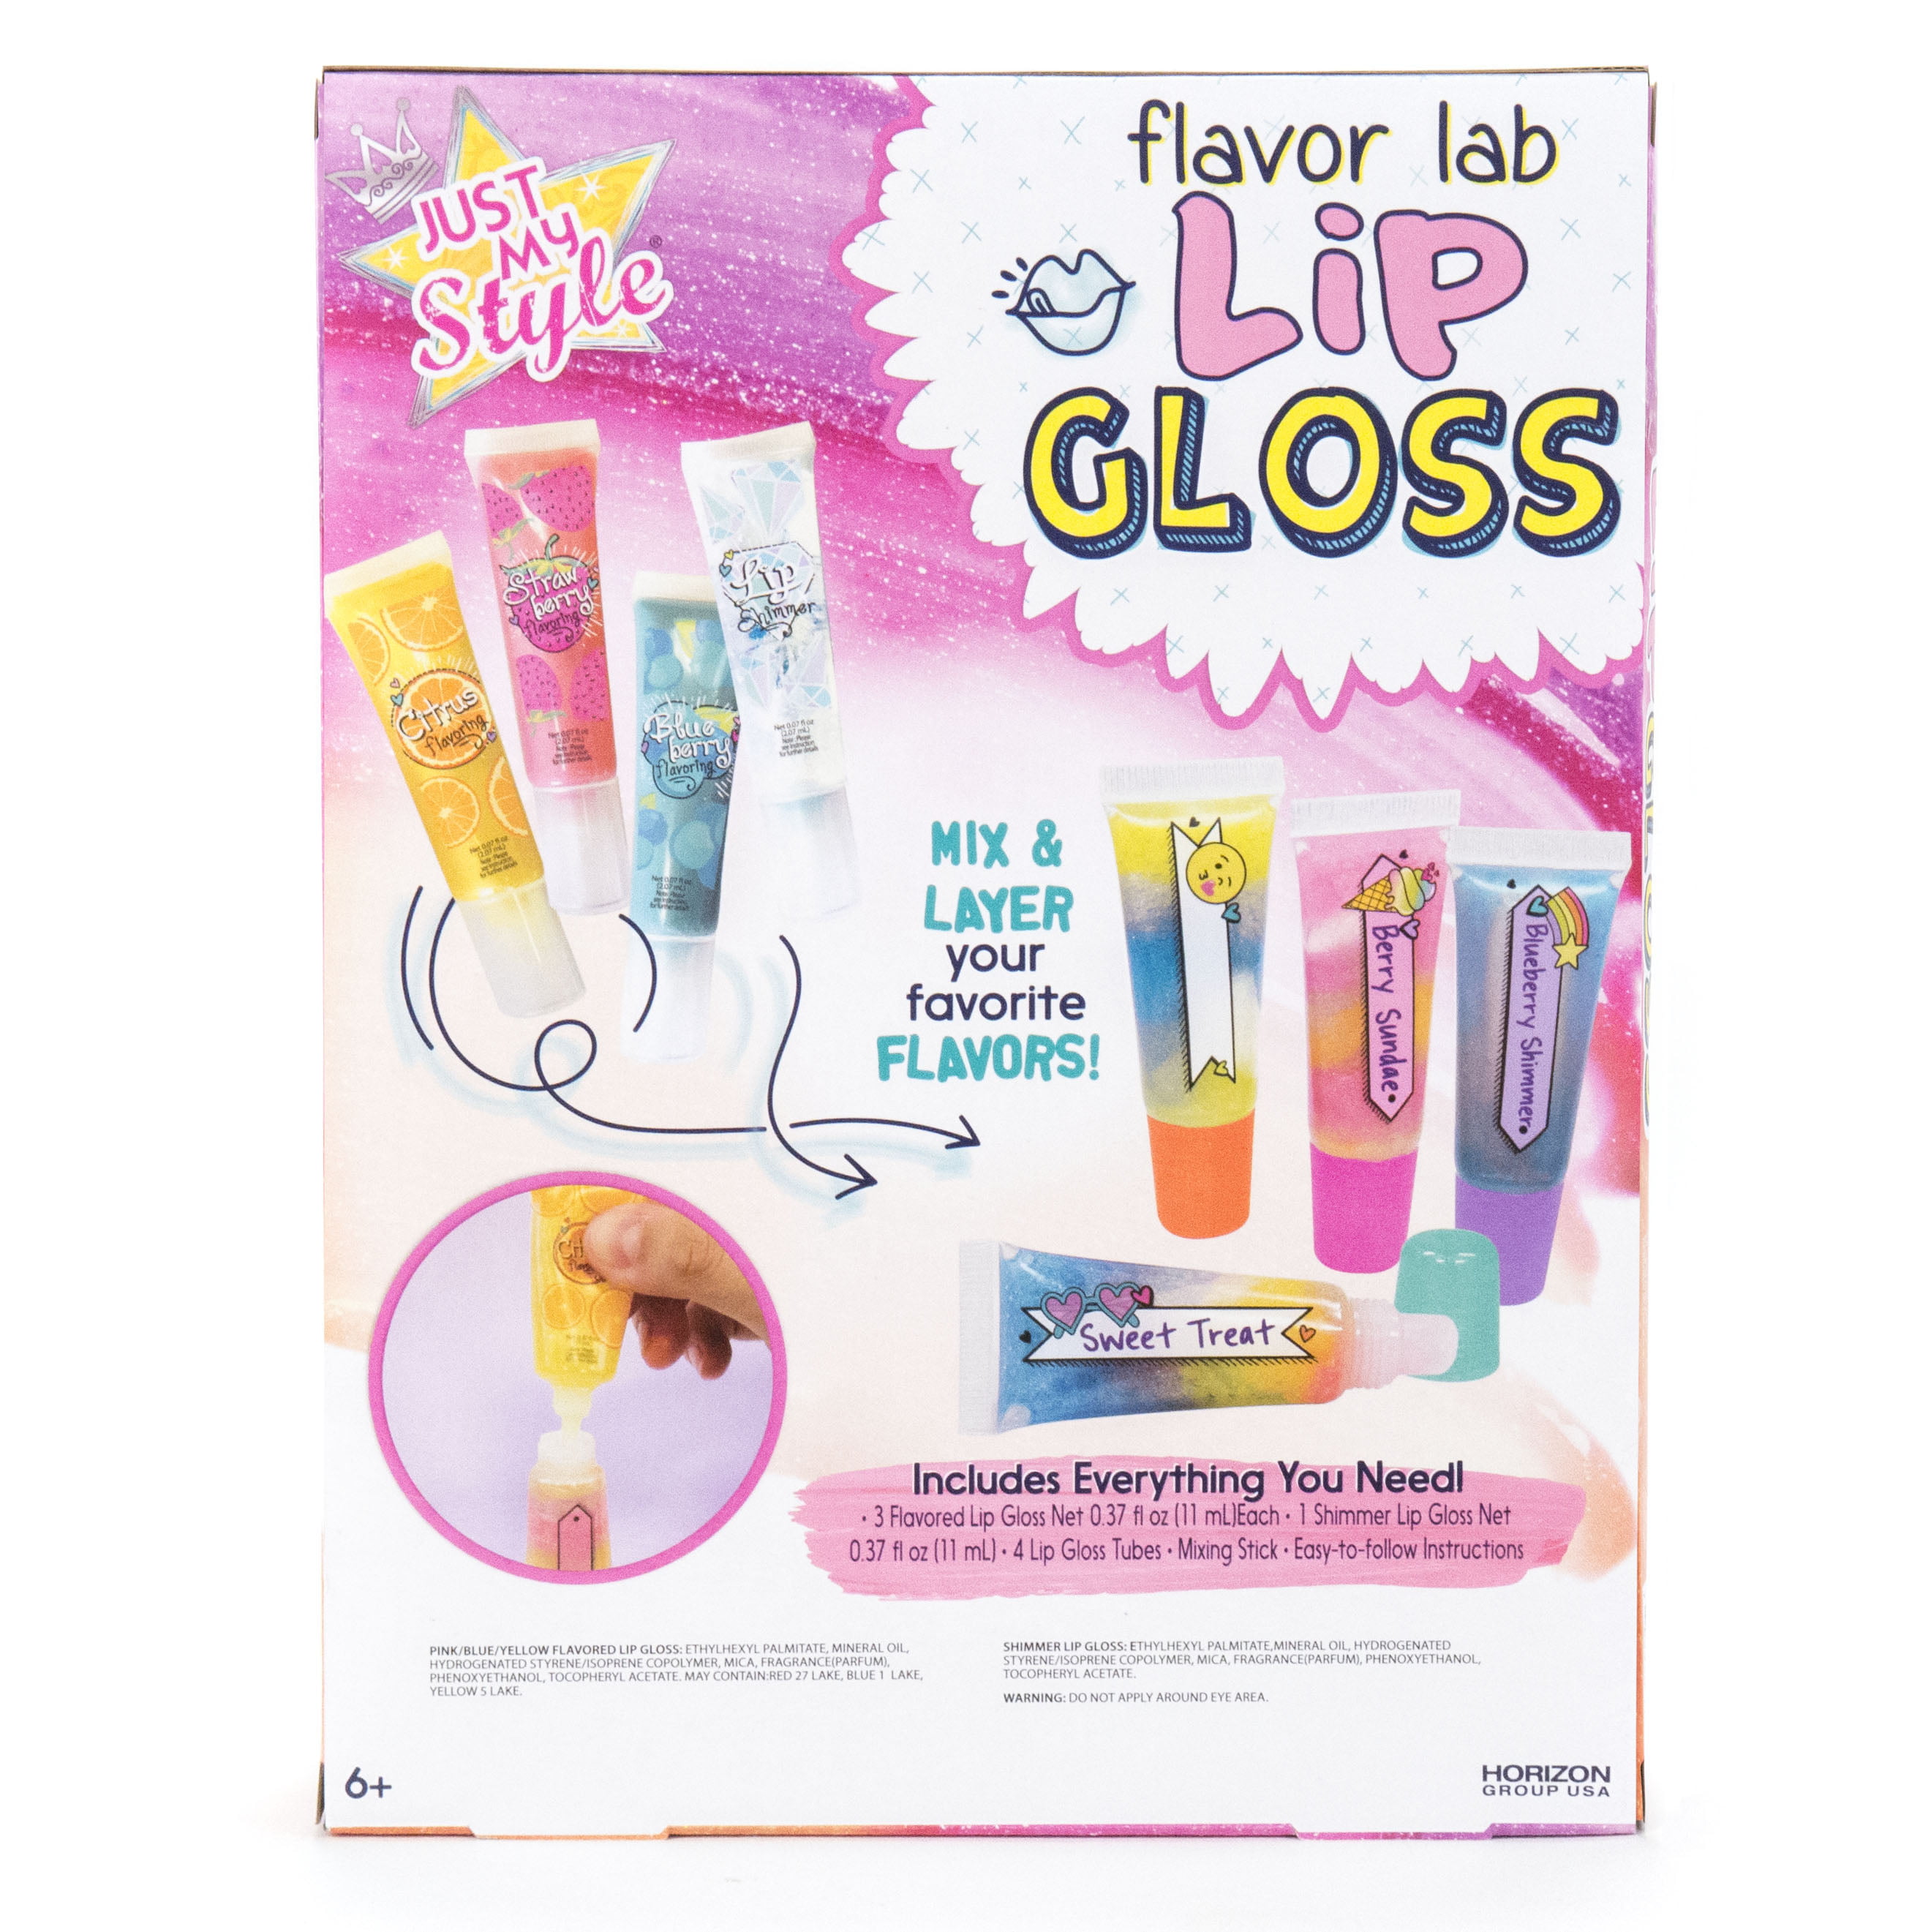 Just My Style Flavour Lab Lip Gloss par Horizon Group USA, DIY 4 Custom Lip  Gloss en mélangeant des saveurs colorées et un chatoyant à lèvres.